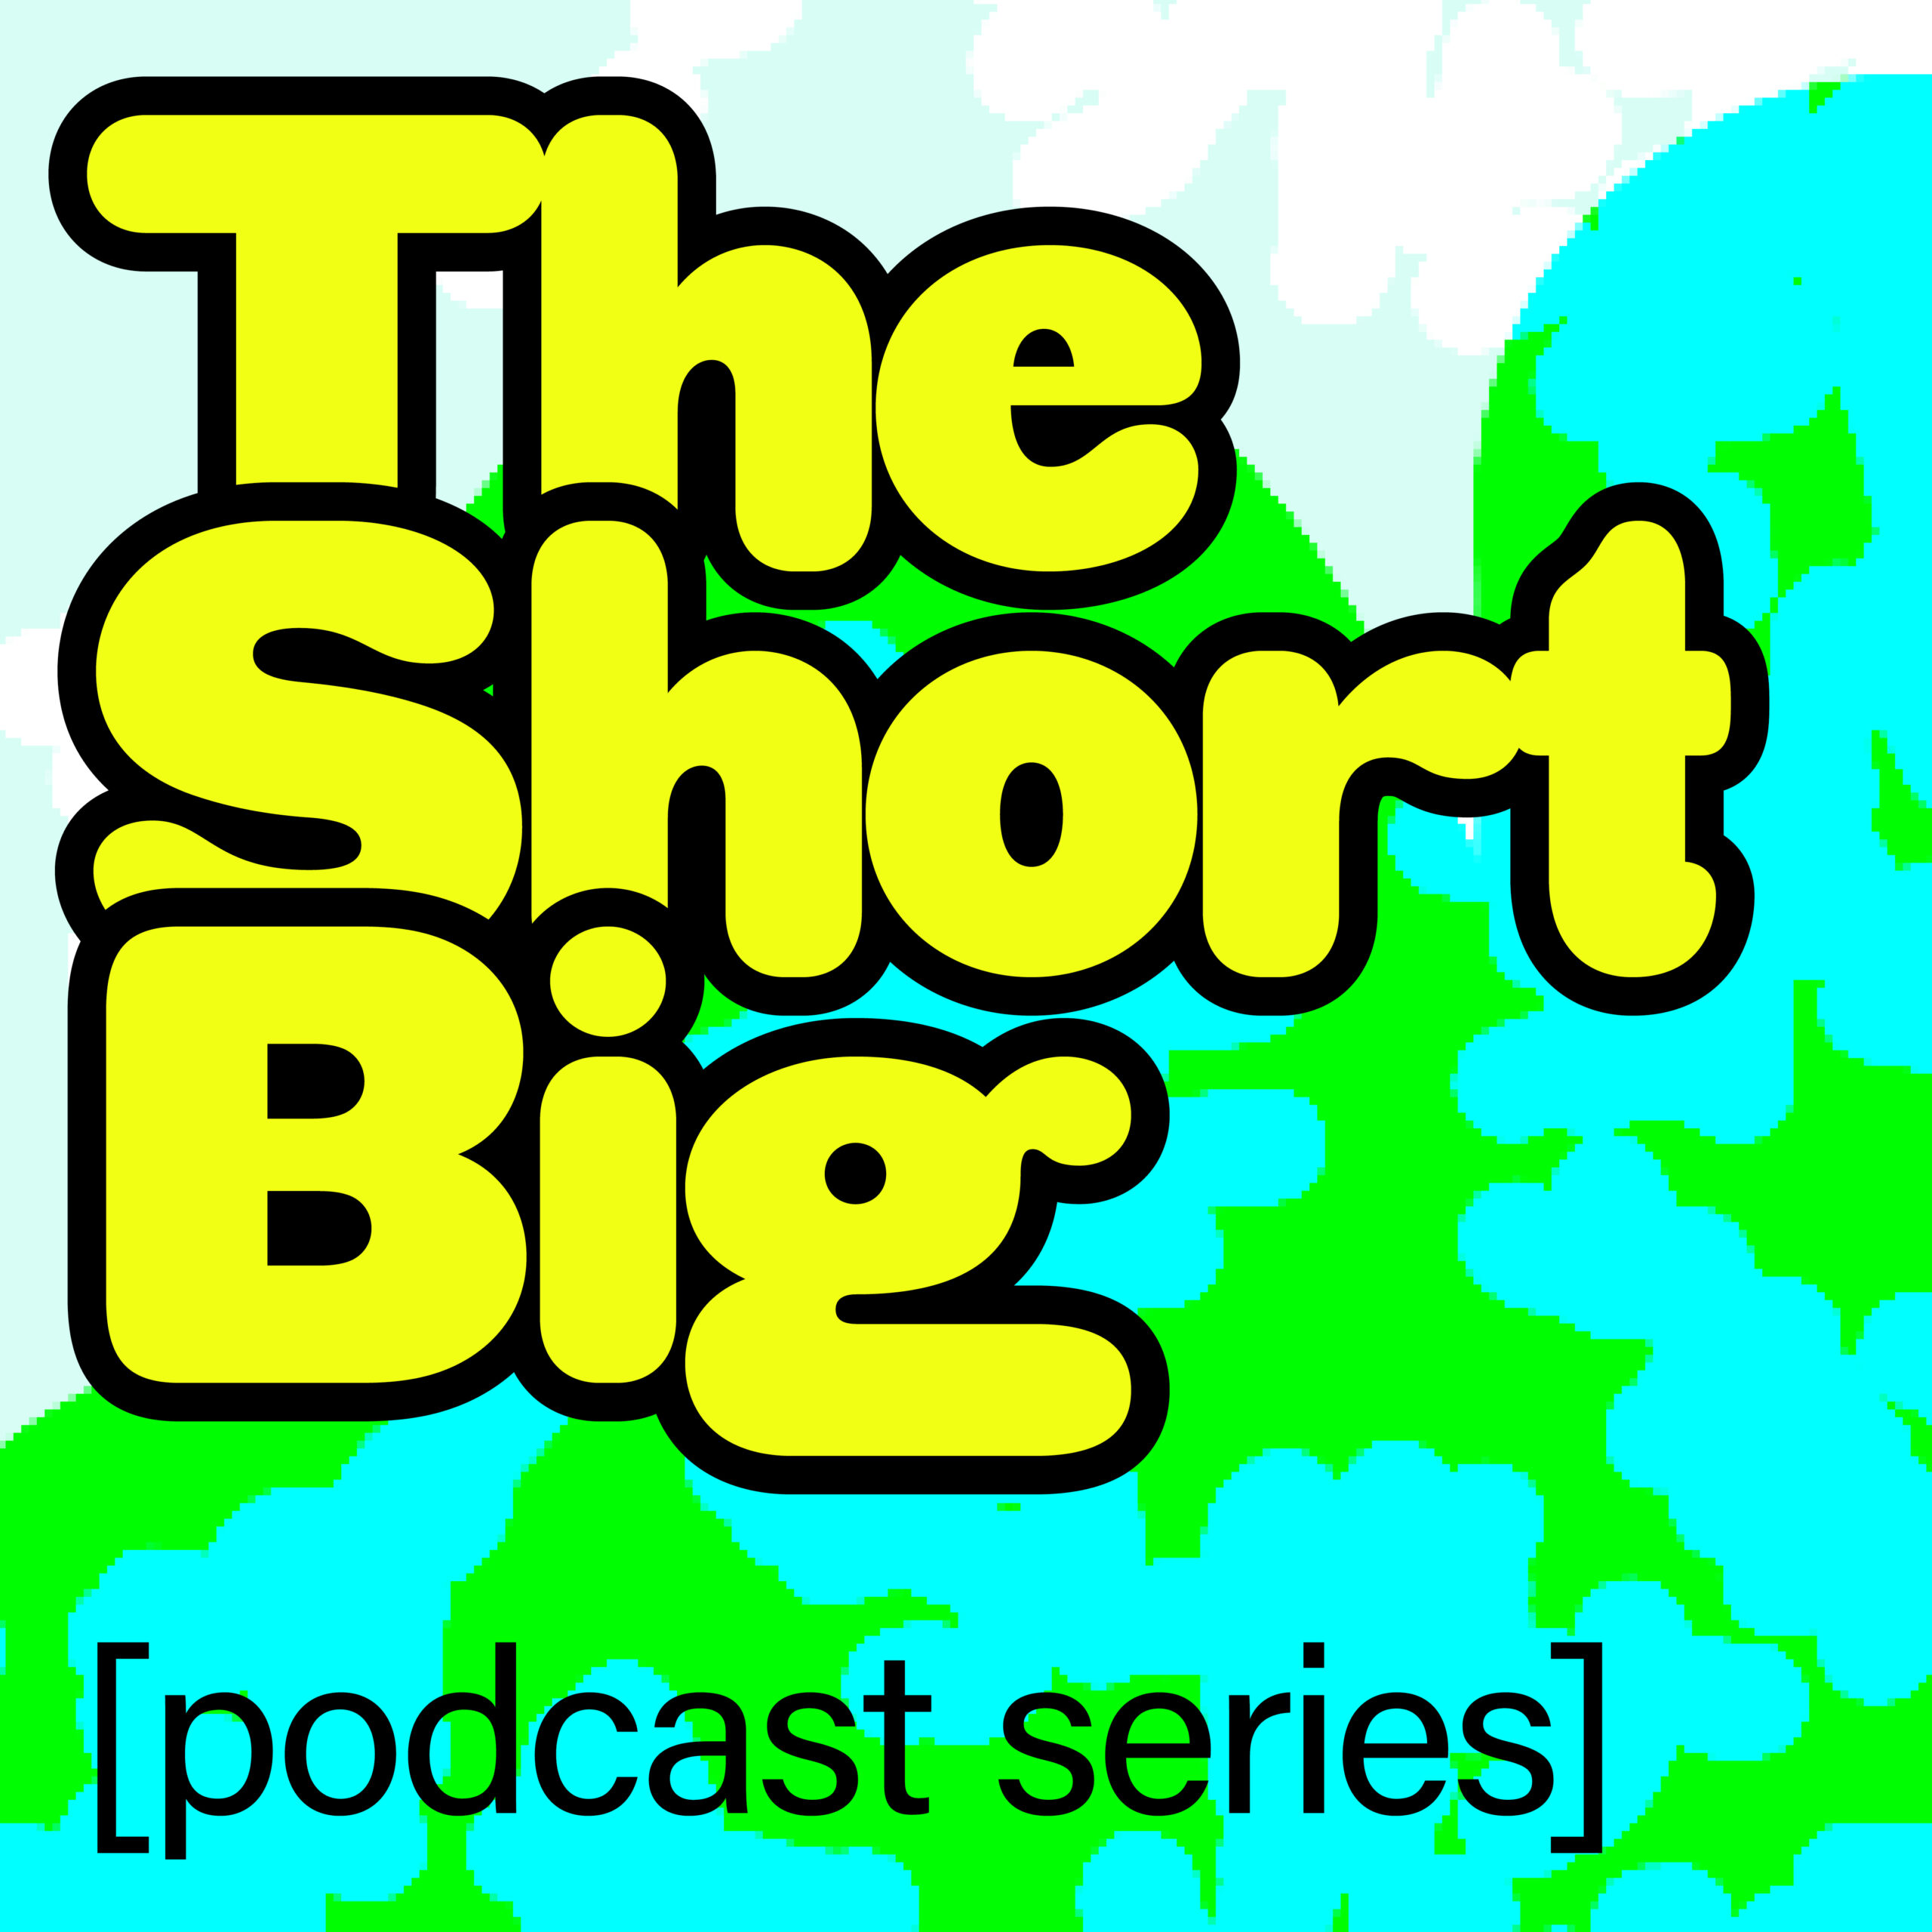 The Short Big